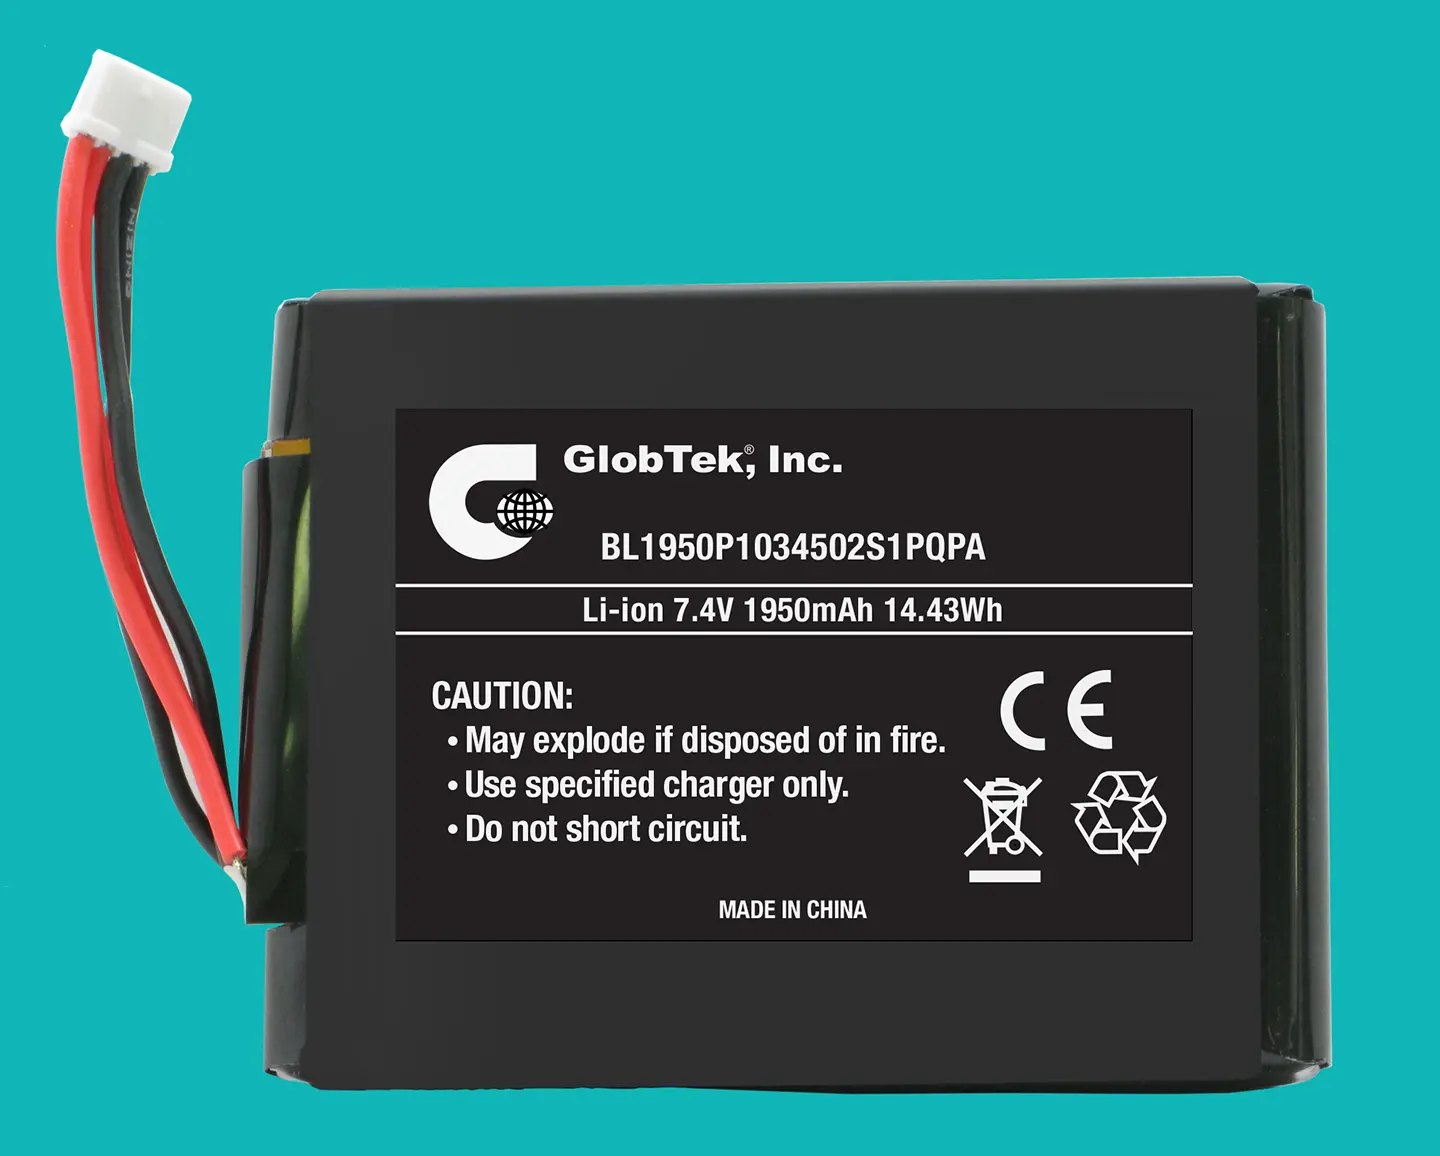 BL1950P1034502S1PQPA paquete de baterías de GlobTek en Configuración de 2S1P representa más reciente adición a la robusta de alta capacidad de Li-Ion de la familia / prismático batería con aprobación celula de UL 1642 y una marca CE que se ajuste a 2004/1